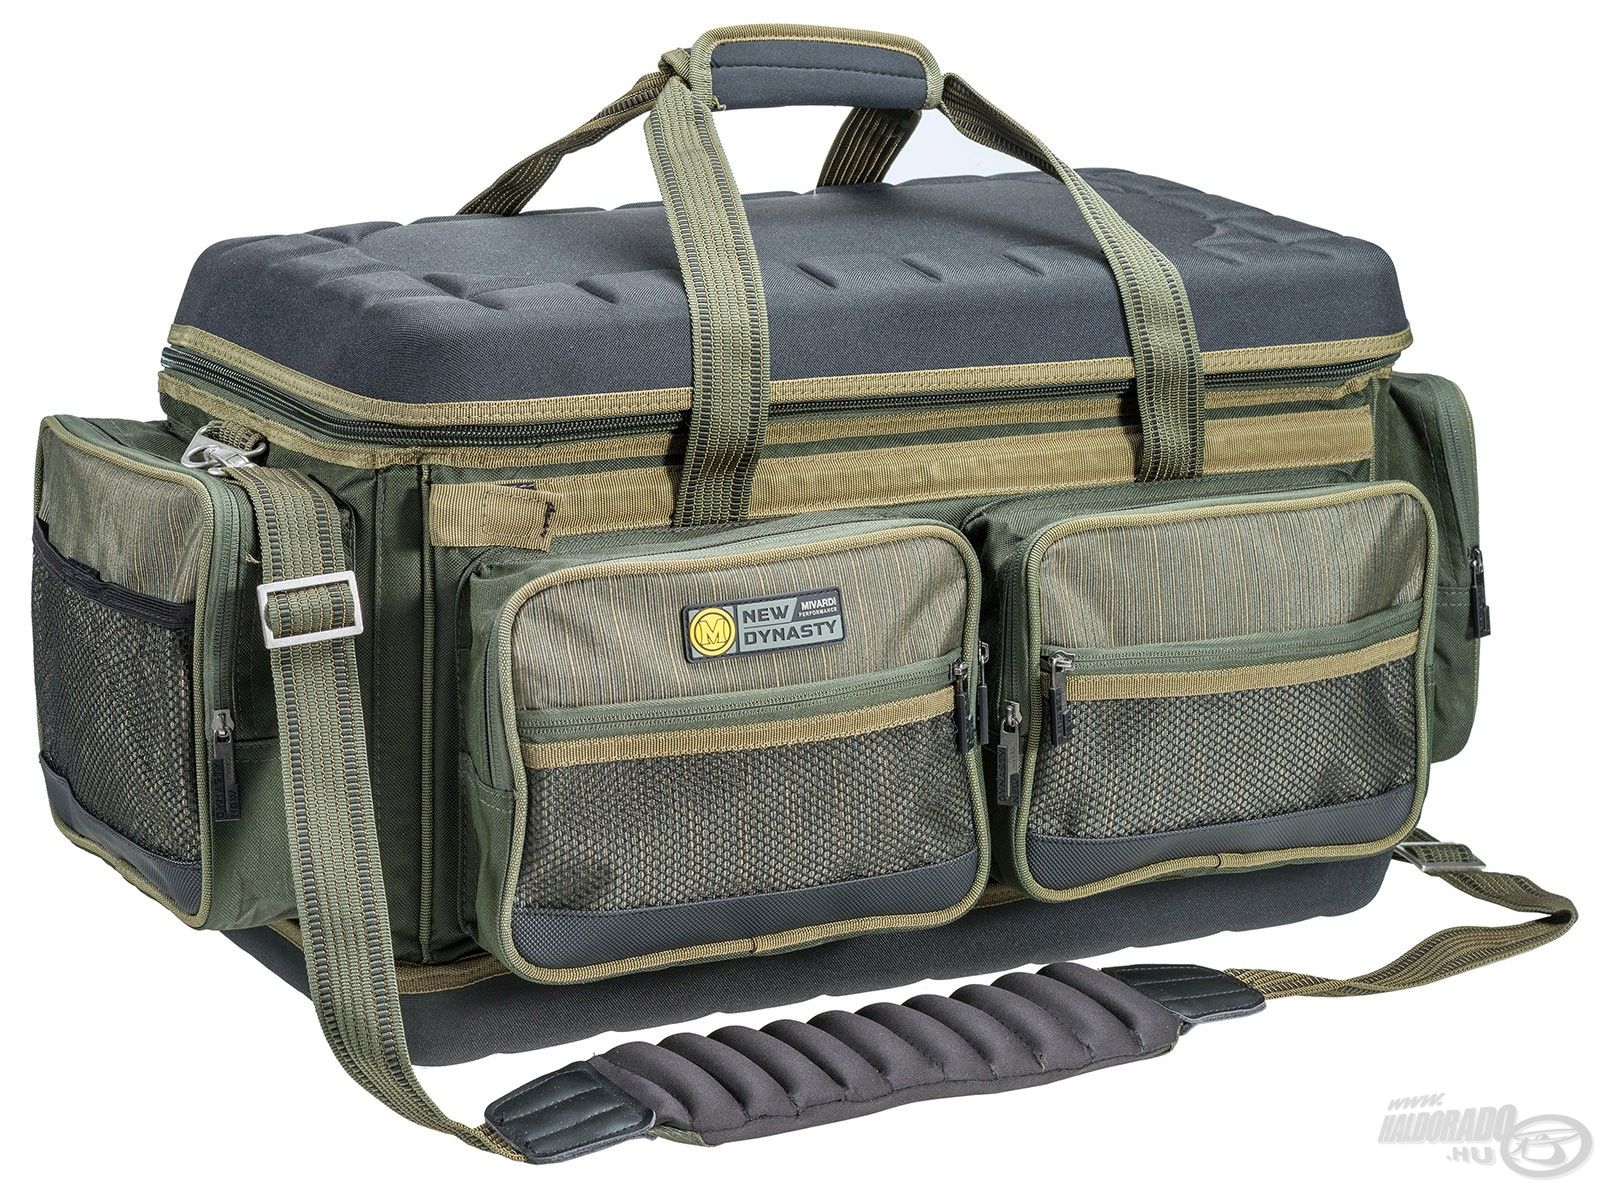 A Mivardi Carryall New Dynasty táska tökéletes megoldást kínál személyes holmink vagy felszerelésünk rendezett tárolására, illetve egyszerű, kényelmes szállítására